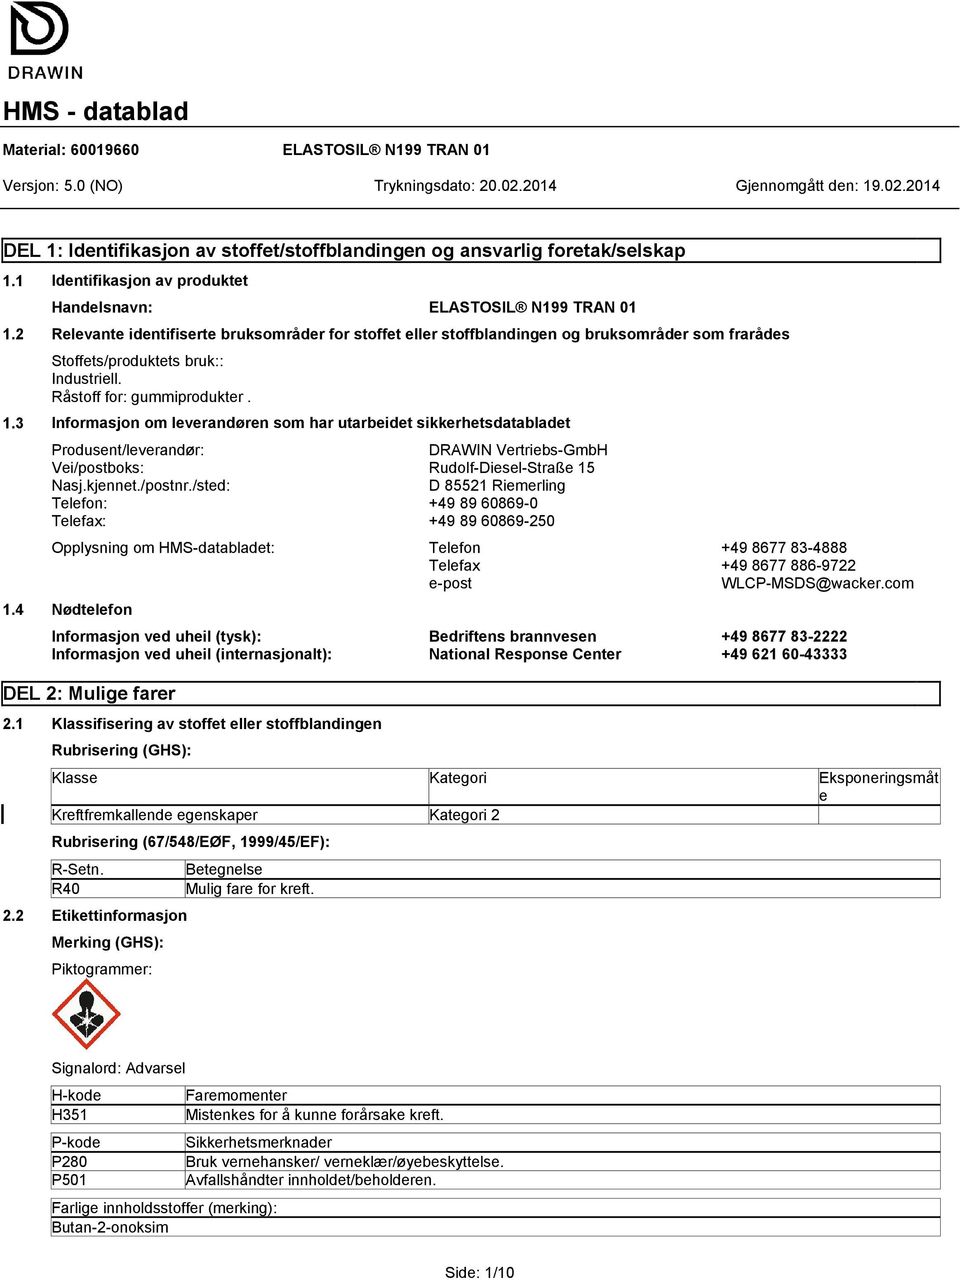 3 Informasjon om leverandøren som har utarbeidet sikkerhetsdatabladet Produsent/leverandør: DRAWIN Vertriebs-GmbH Vei/postboks: Rudolf-Diesel-Straße 15 Nasj.kjennet./postnr.